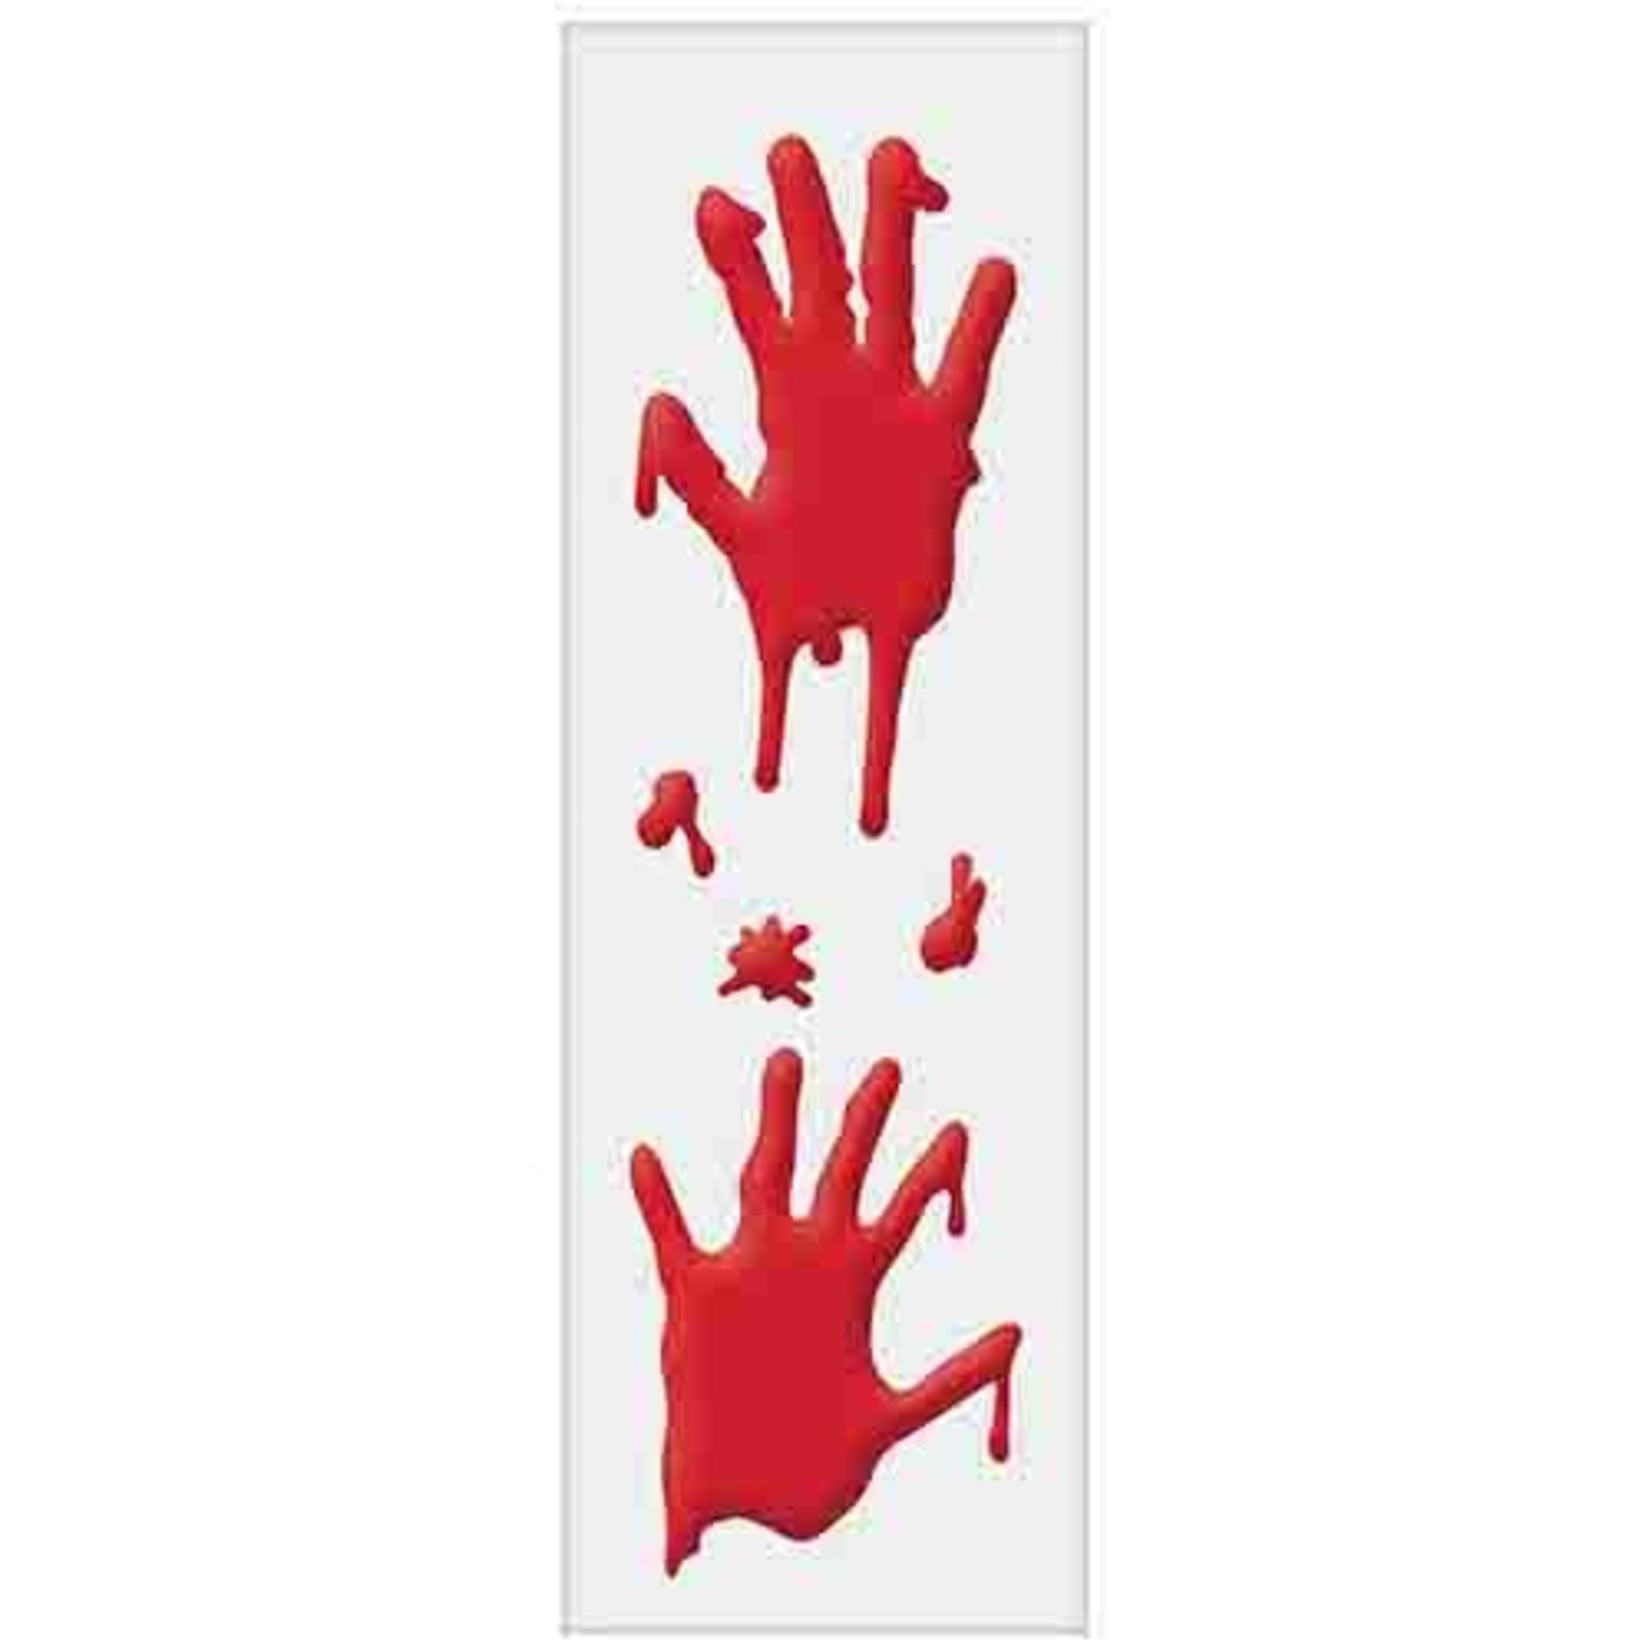 Amscan Bloody Hands Gel Wall Clings - 2ct.